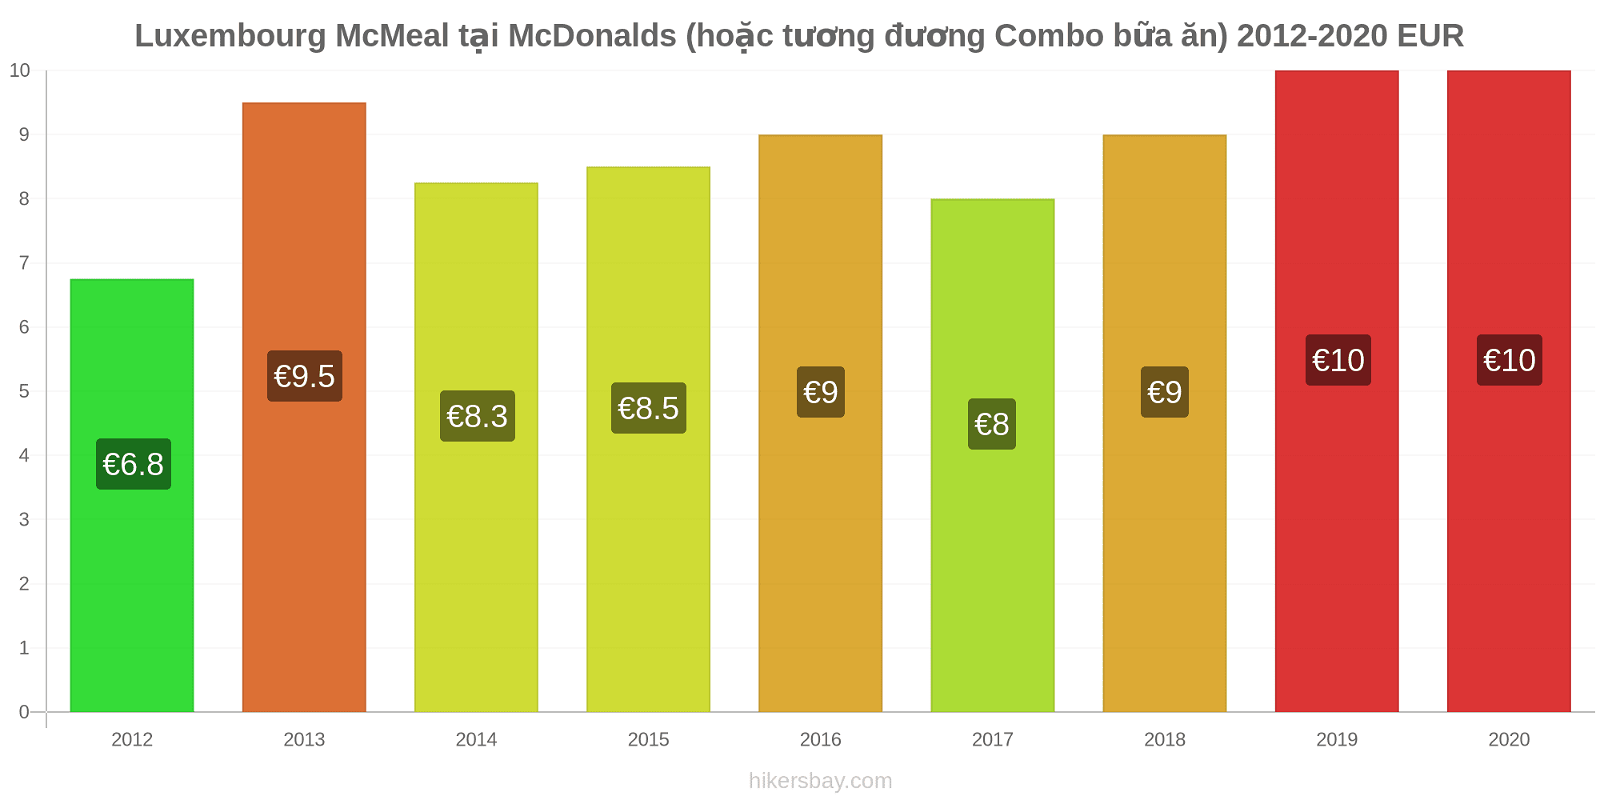 Luxembourg thay đổi giá McMeal tại McDonalds (hoặc tương đương Combo bữa ăn) hikersbay.com